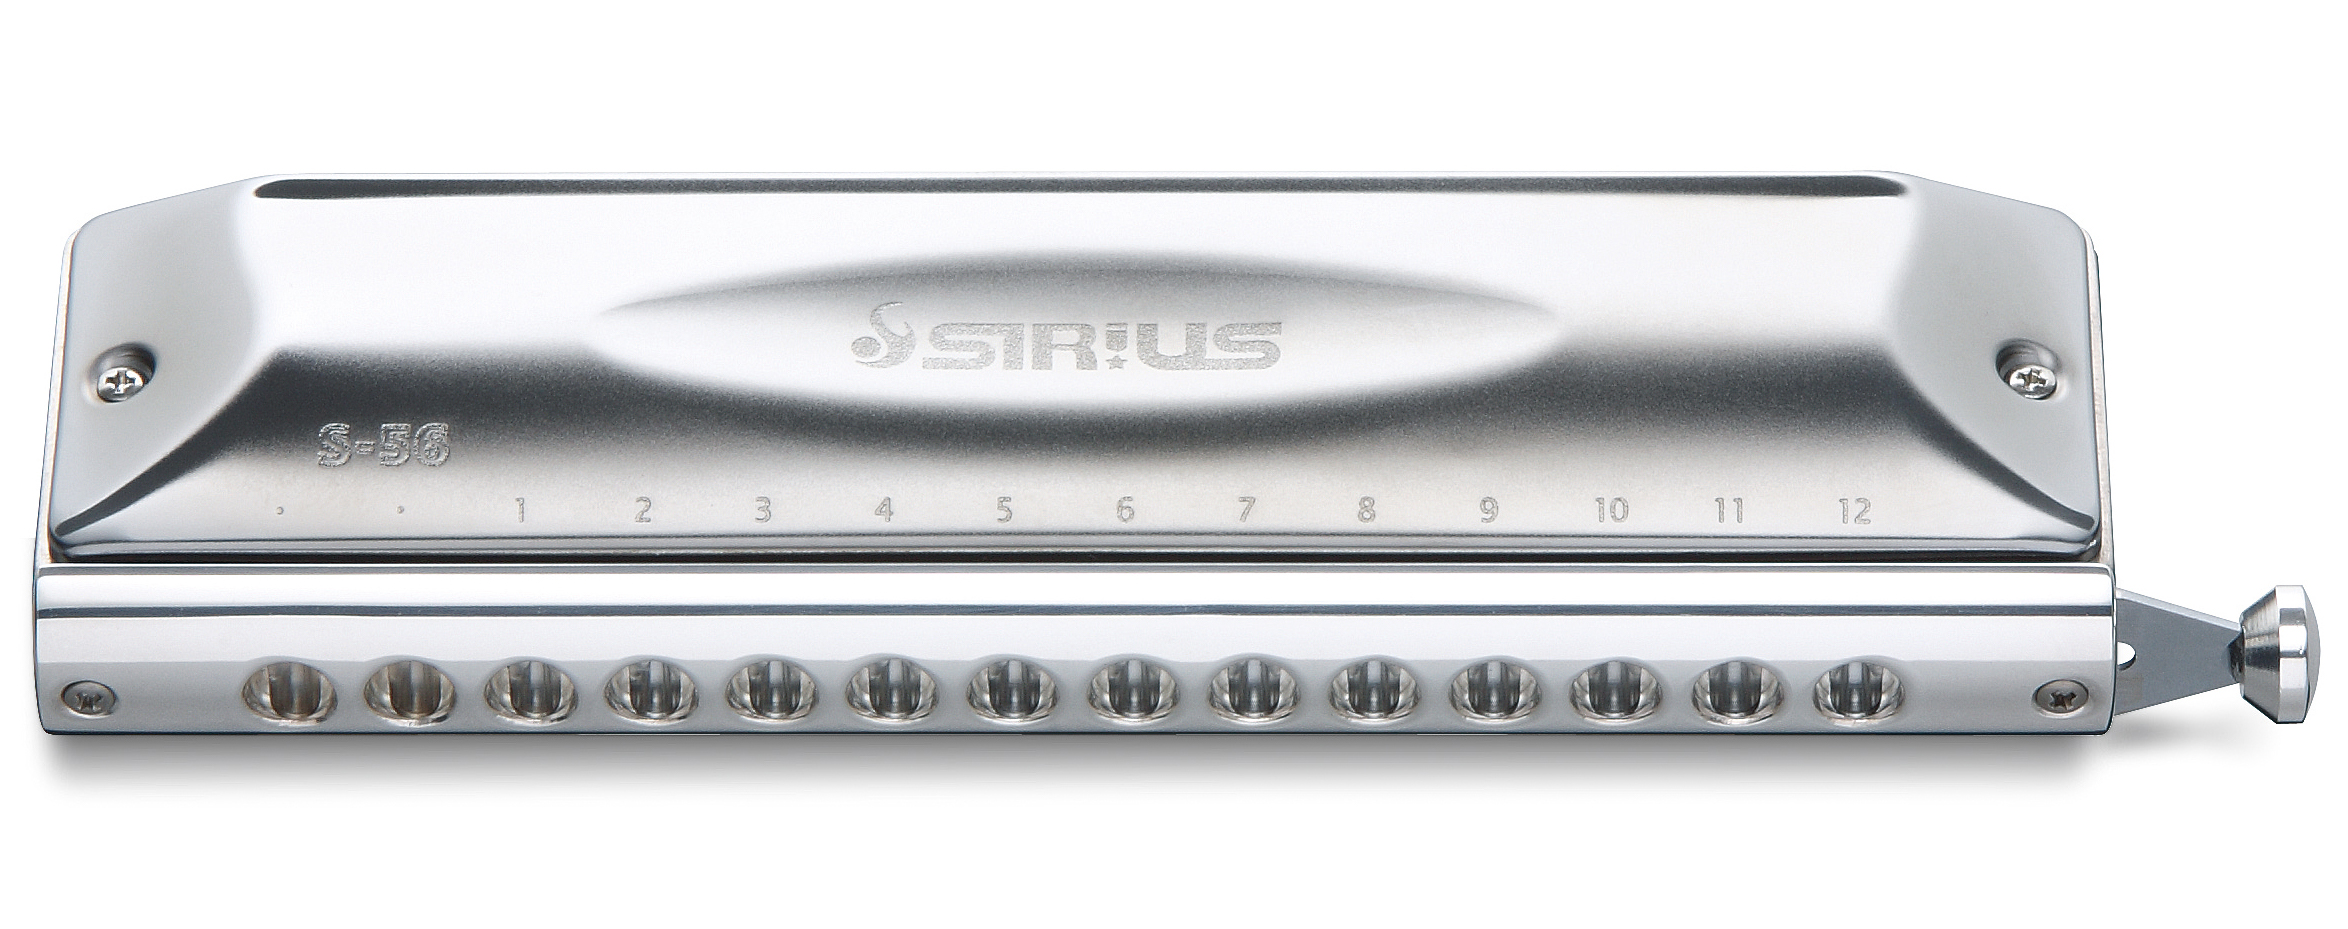 Harmonika chromatická Suzuki  S-56S Sirius Chromatic